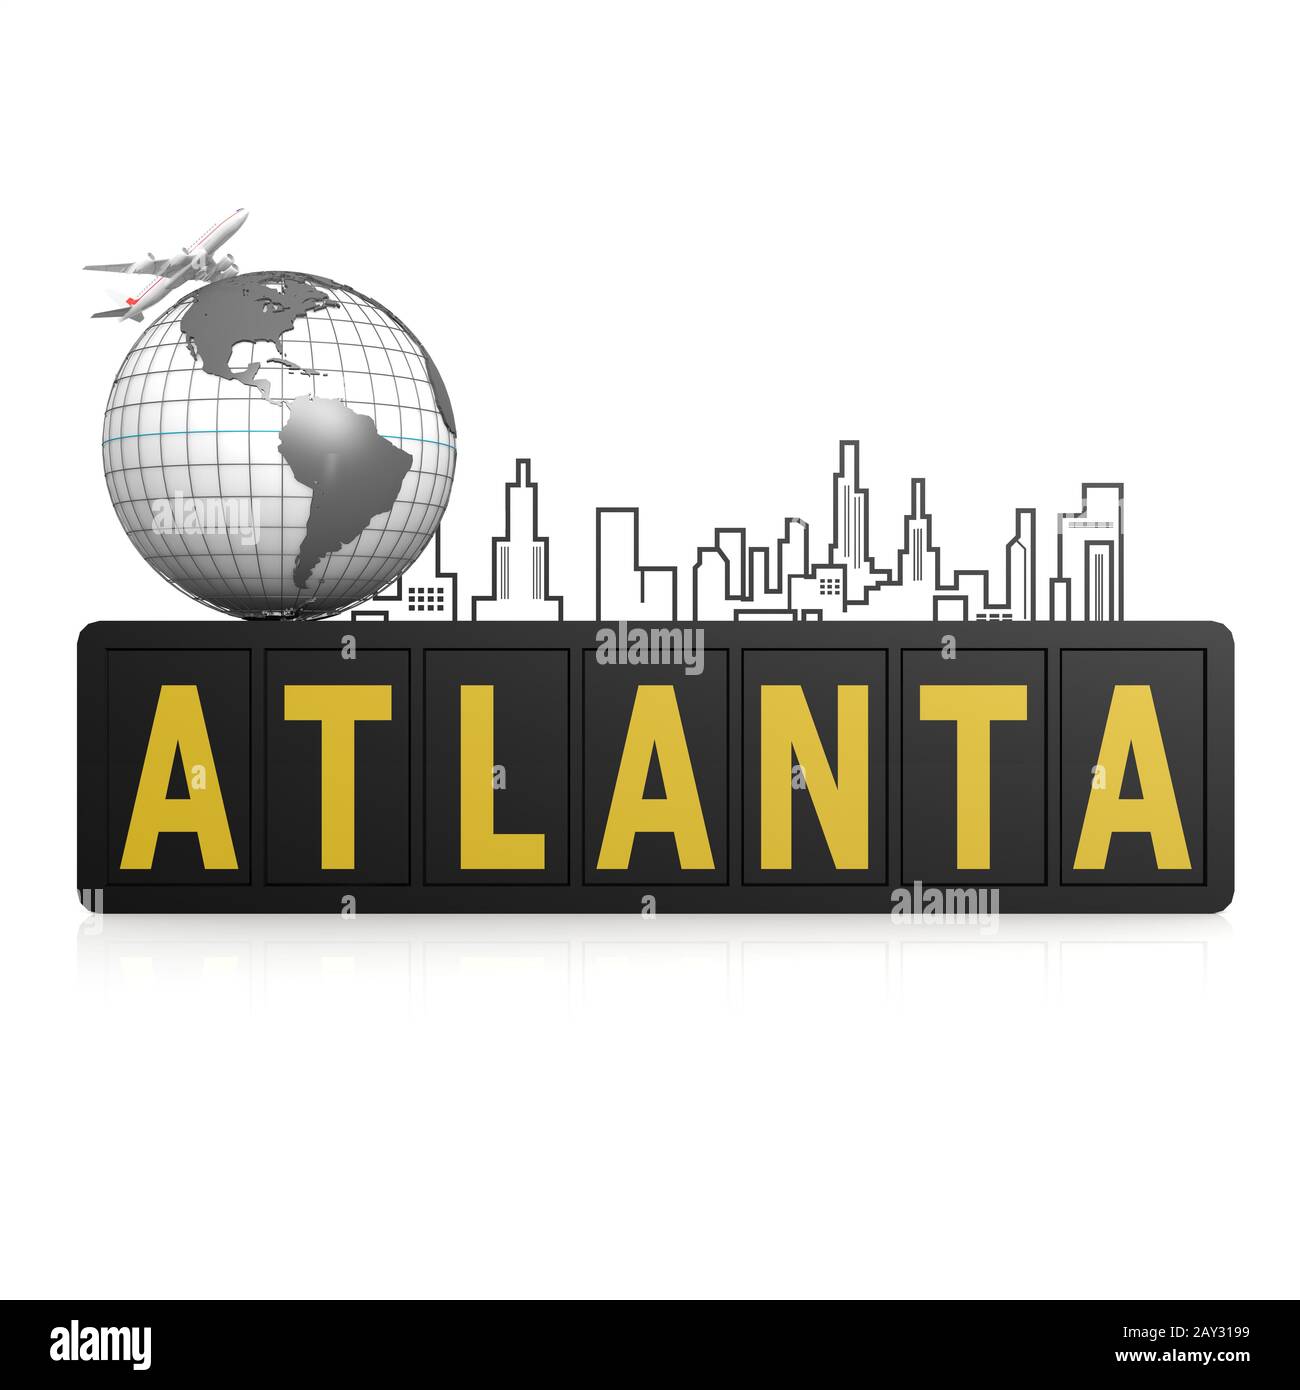 Atlanta city Stock Photo